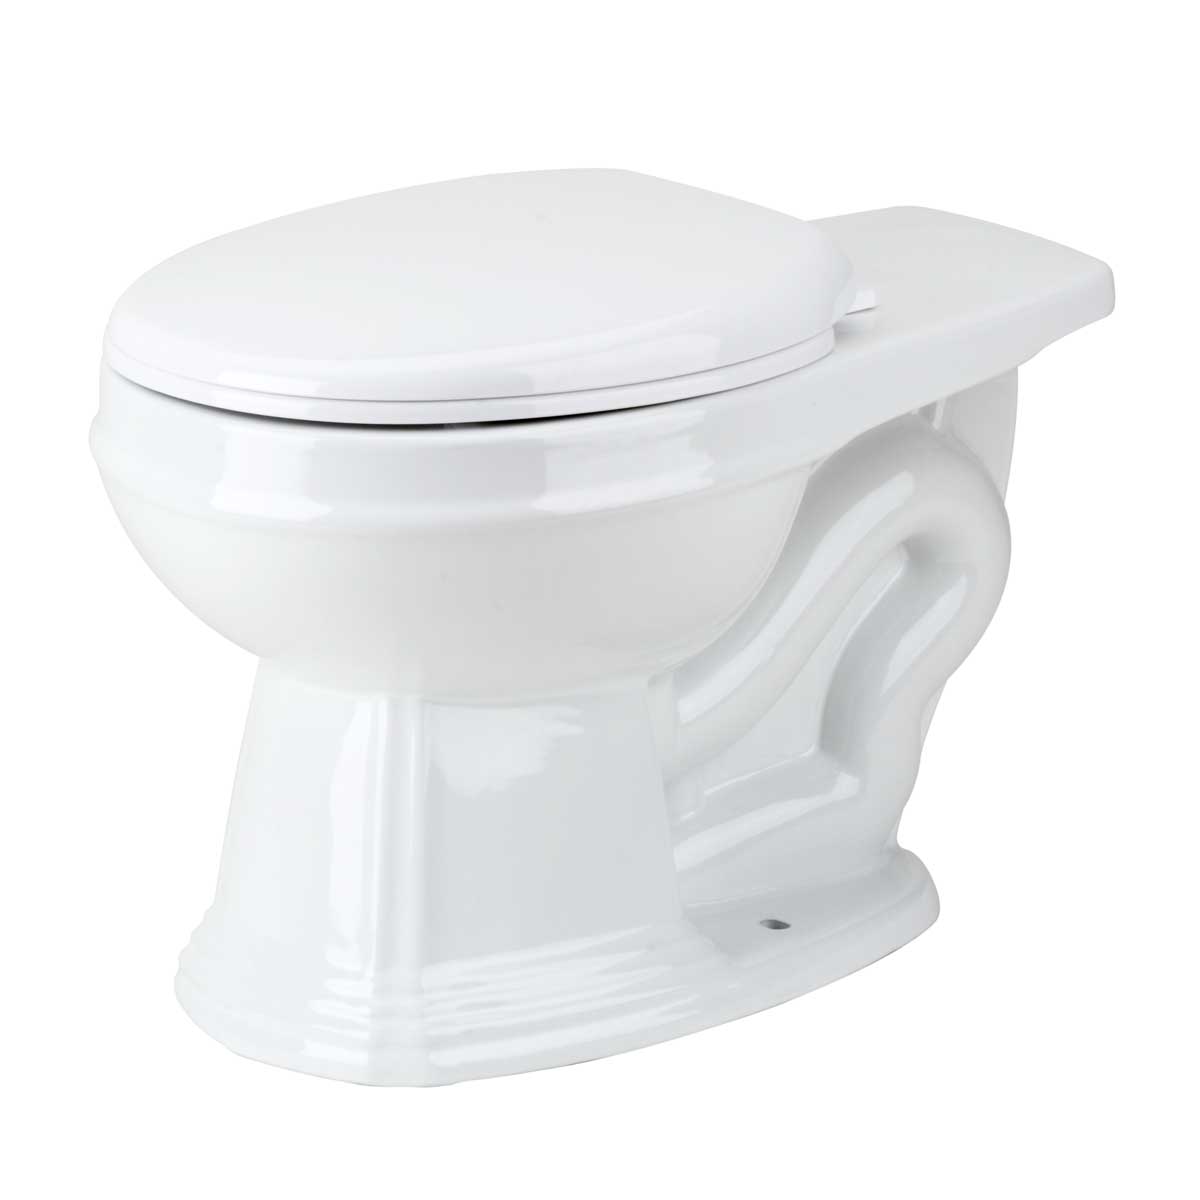 Renovators Supply White 2 Piece Round Toilet Sheffield Toilet Bowl with Slow Close Toilet Seat